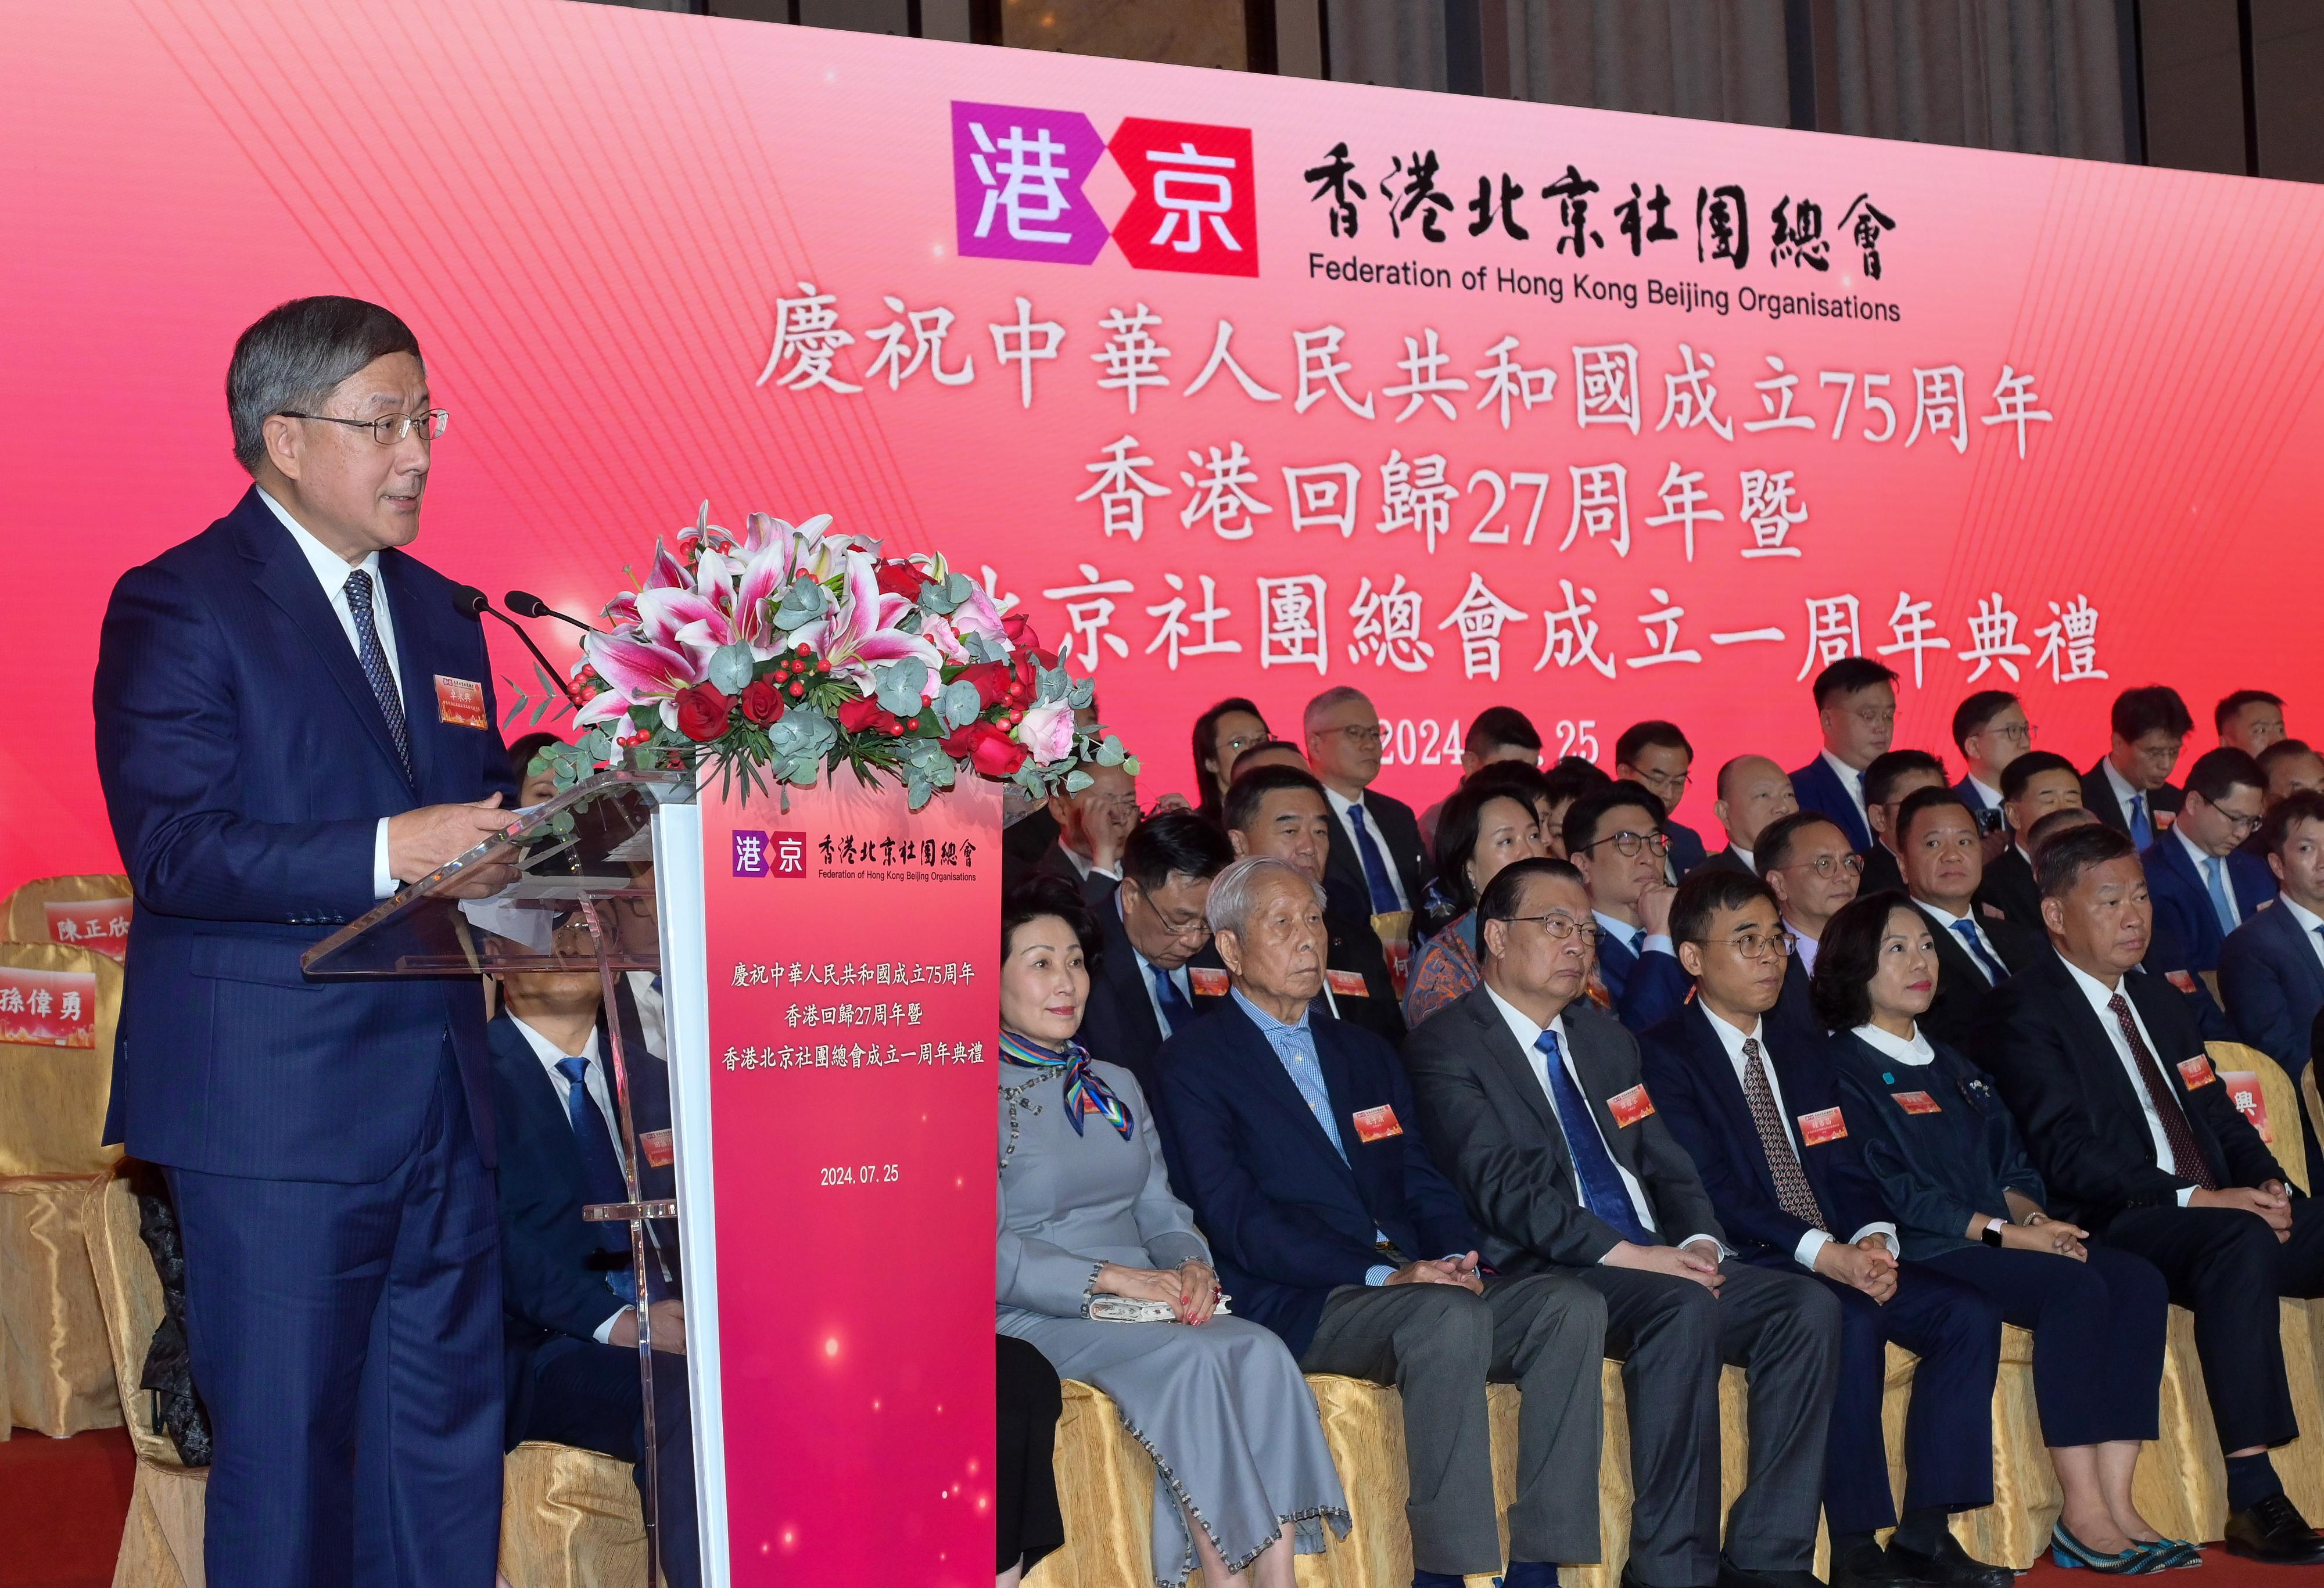 政務司副司長出席慶祝中華人民共和國成立75周年、香港回歸27周年暨香港北京社團總會成立一周年典禮致辭